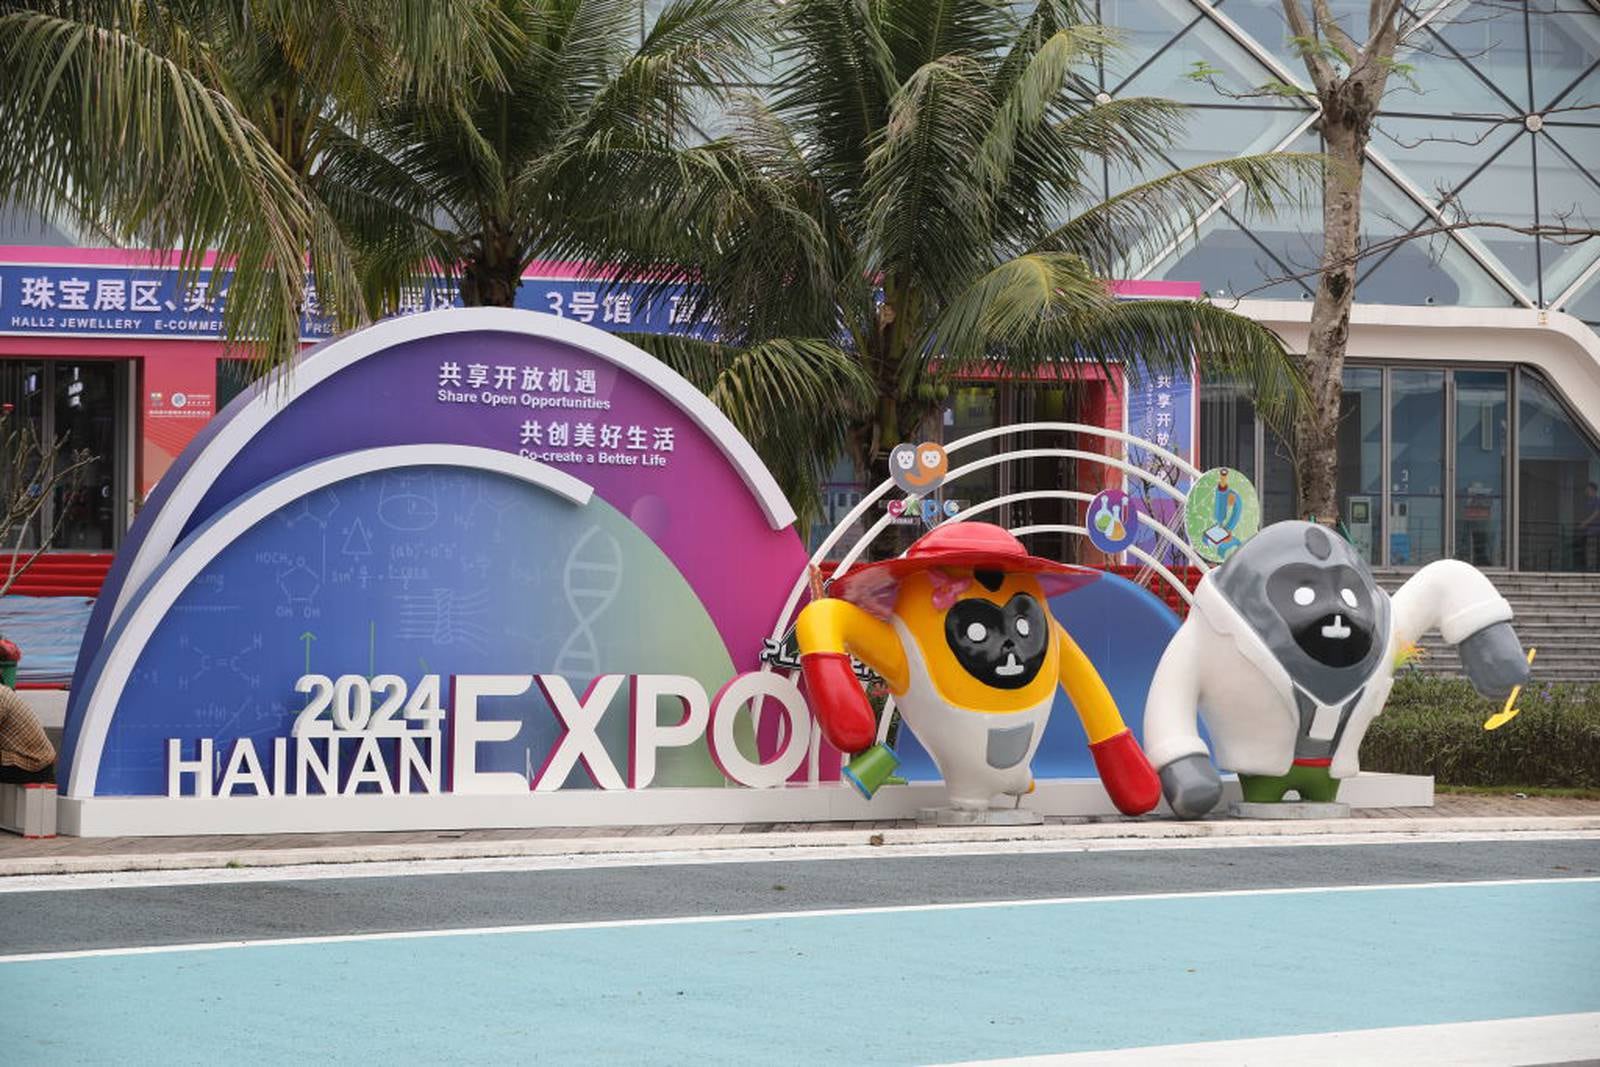 Hainan Expo 2024